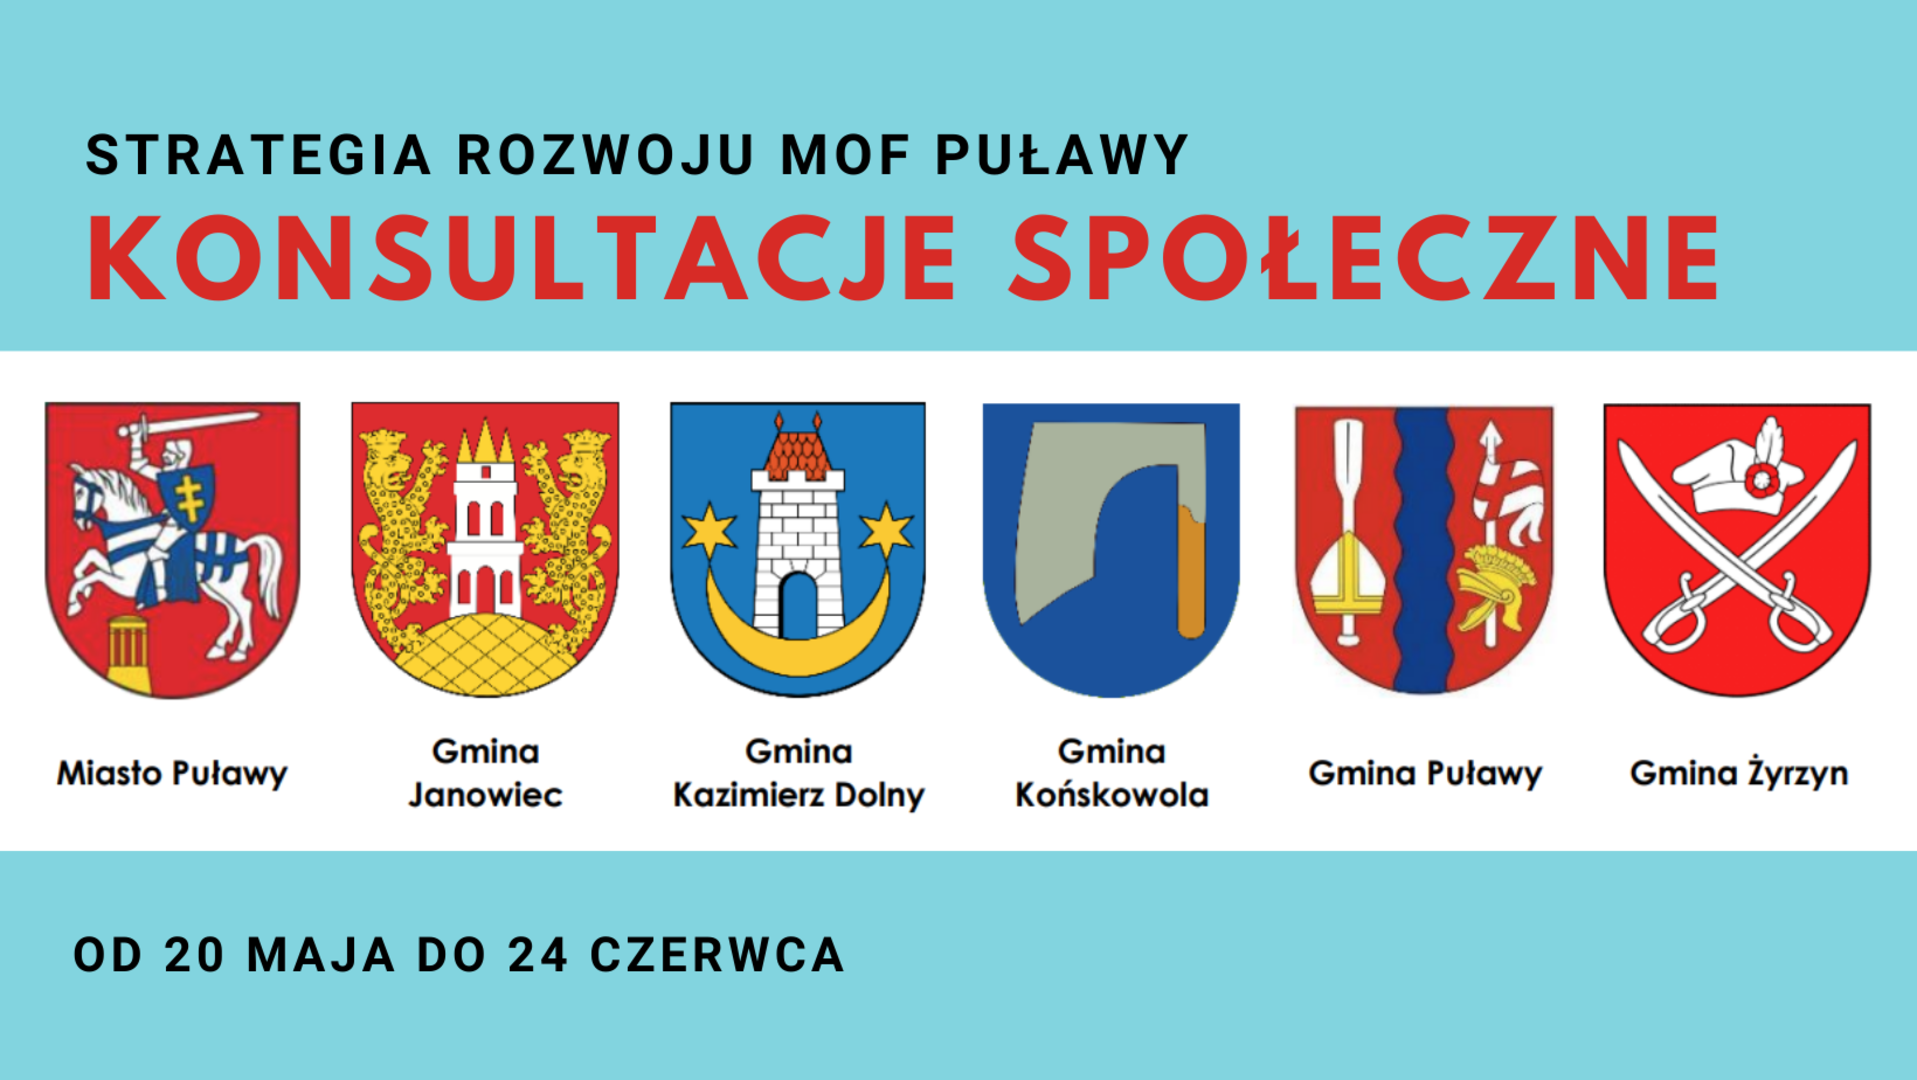 Strategia Rozwoju MOF Puławy - konsultacje społeczne. Miasto Puławy, Gmina Janowiec, Gmina Kazimierz Dolny, Gmina Końskowola, Gmina Puławy, Gmina Żyrzyn. Od 20 maja do 24 czerwca.